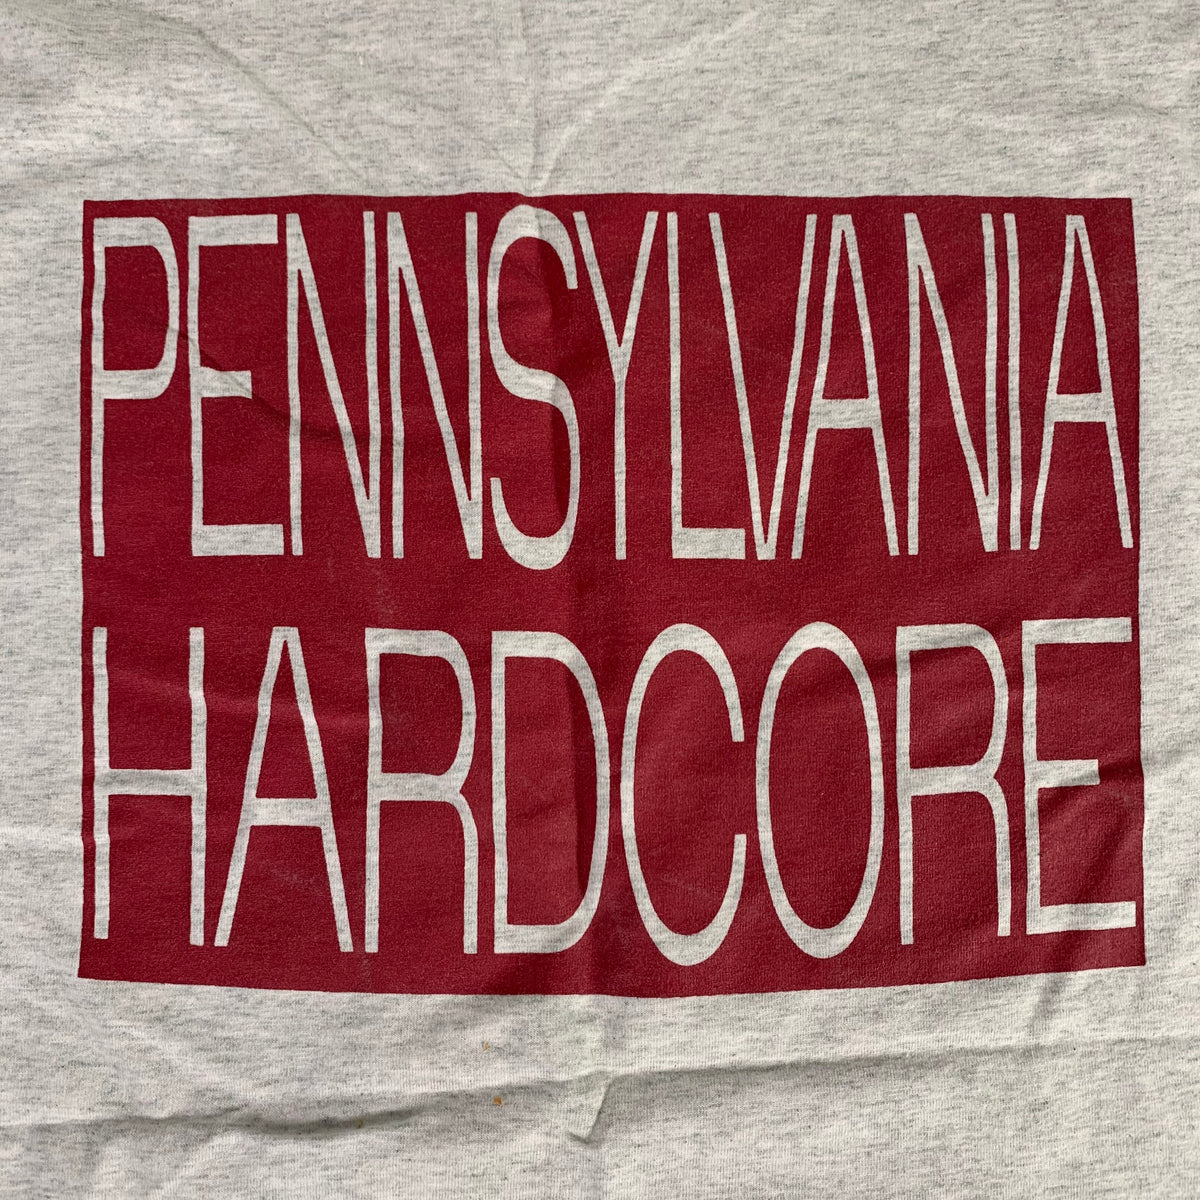 Vintage Krutch &quot;Pennsylvania Hardcore&quot; T-Shirt